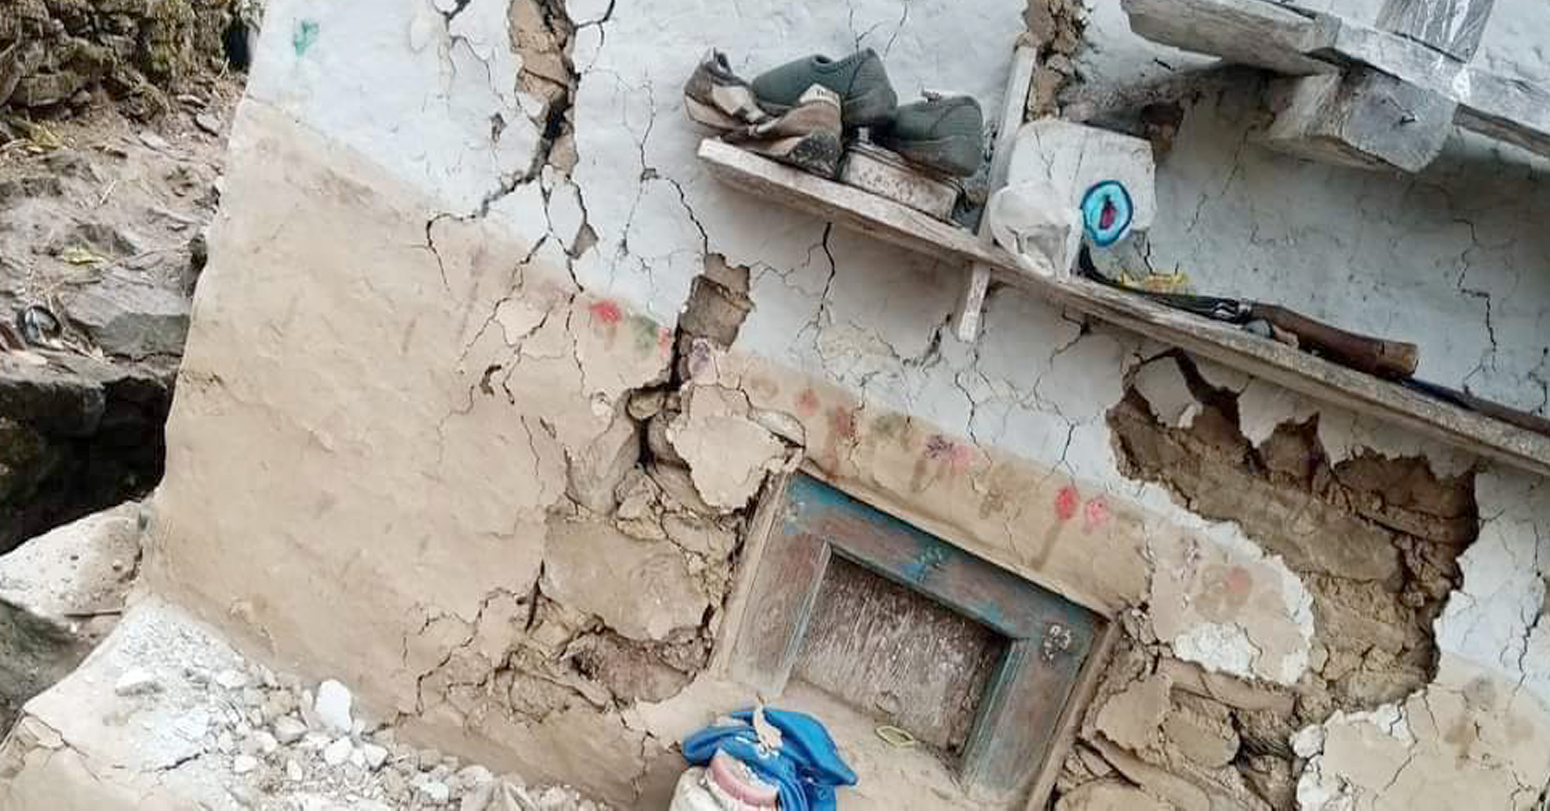 बाजुरामा भूकम्पबाट ४२ परिवार विस्थापित, चार सय घरमा क्षति